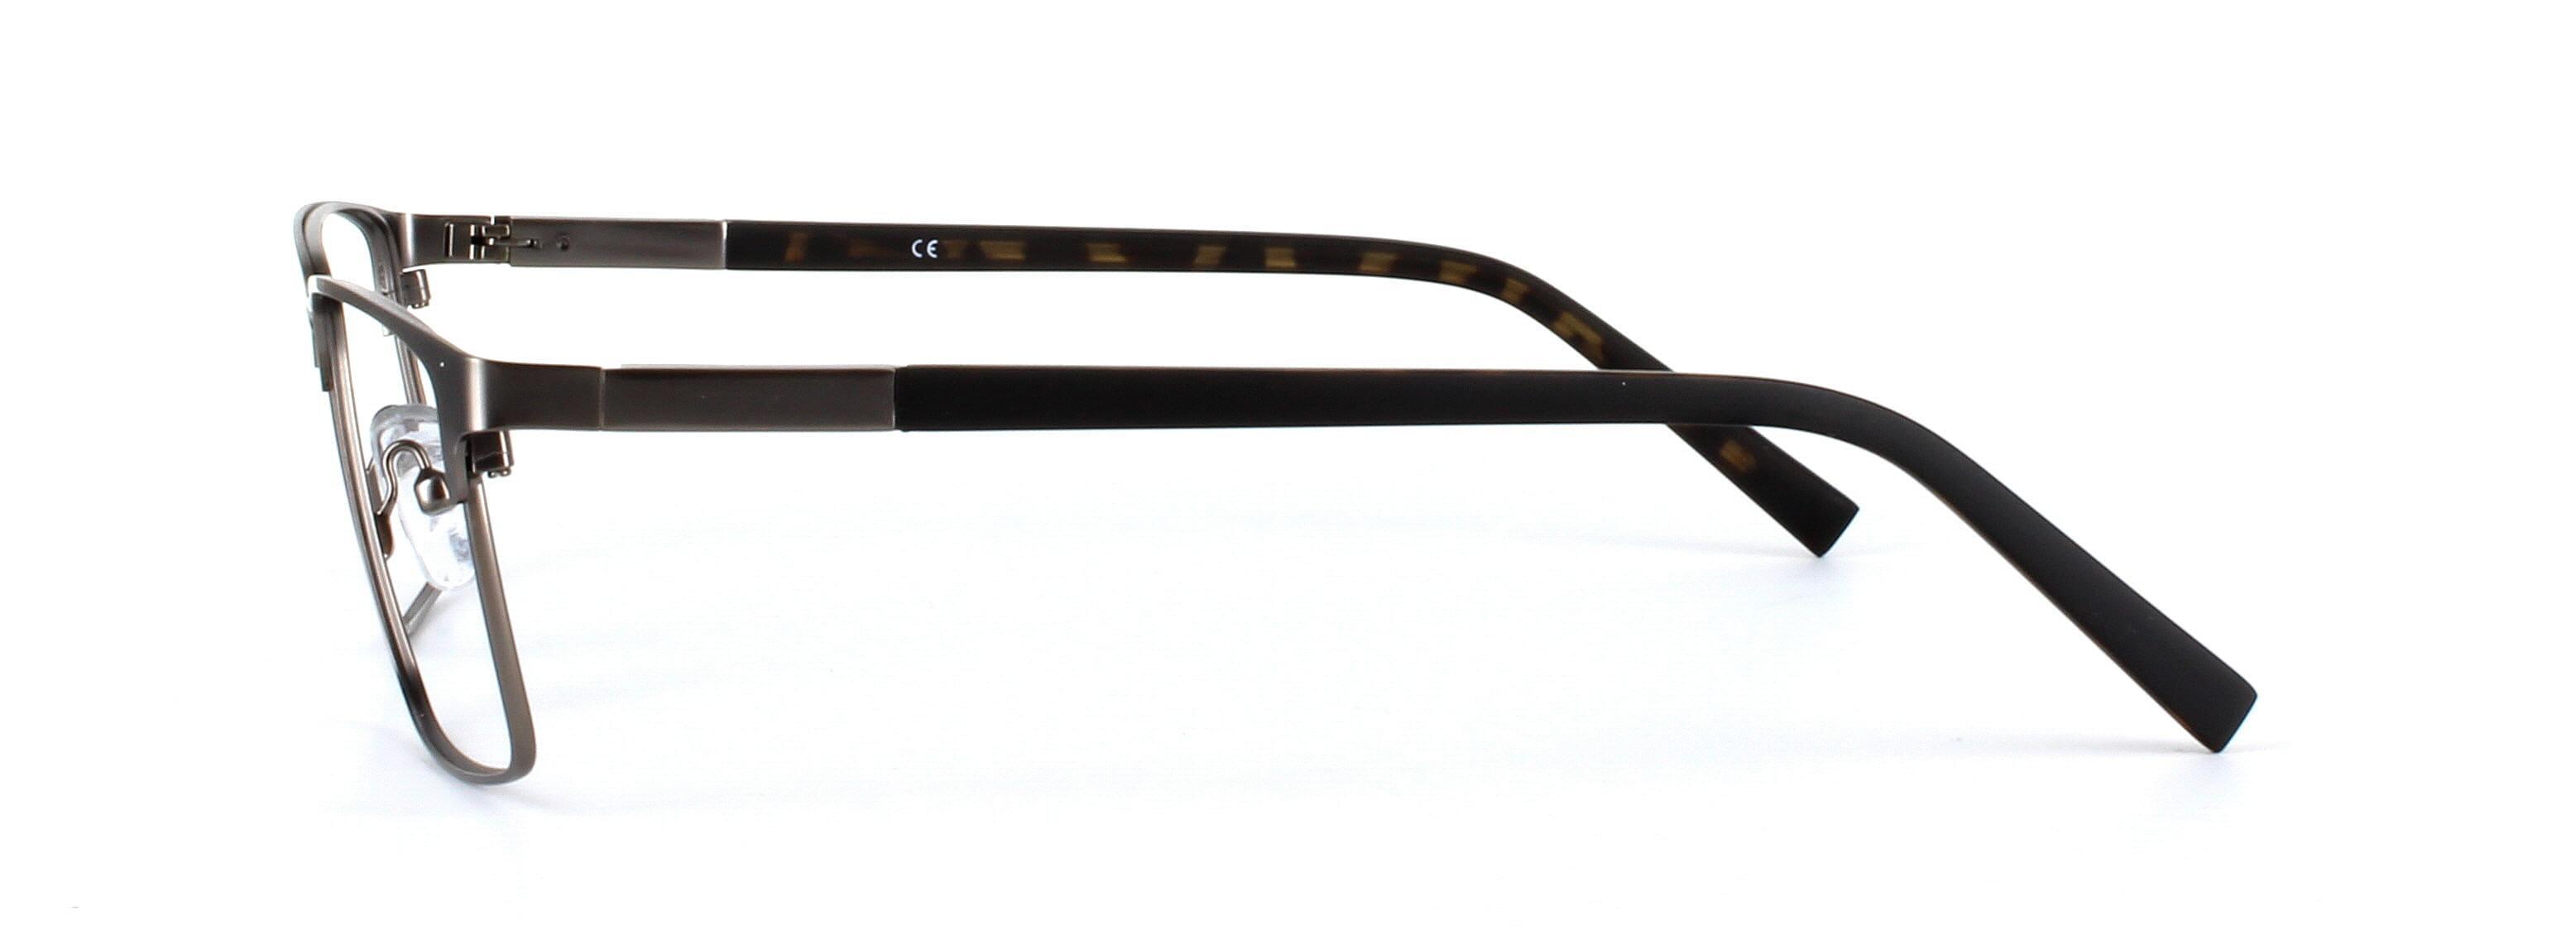 Natark Gunmetal Full Rim Metal Glasses - Image View 2